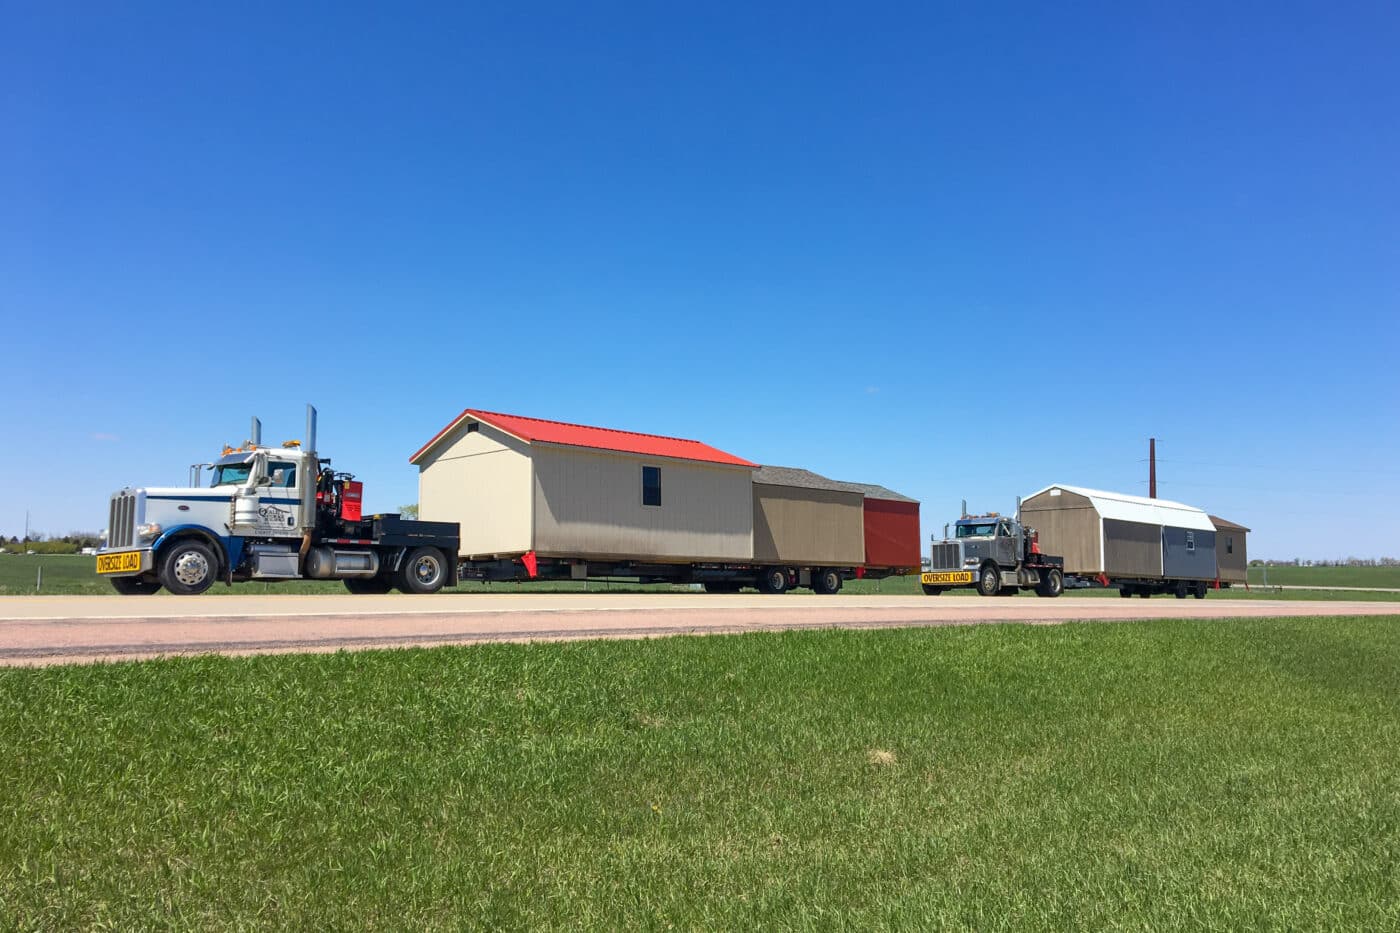 Truck delivering storage sheds